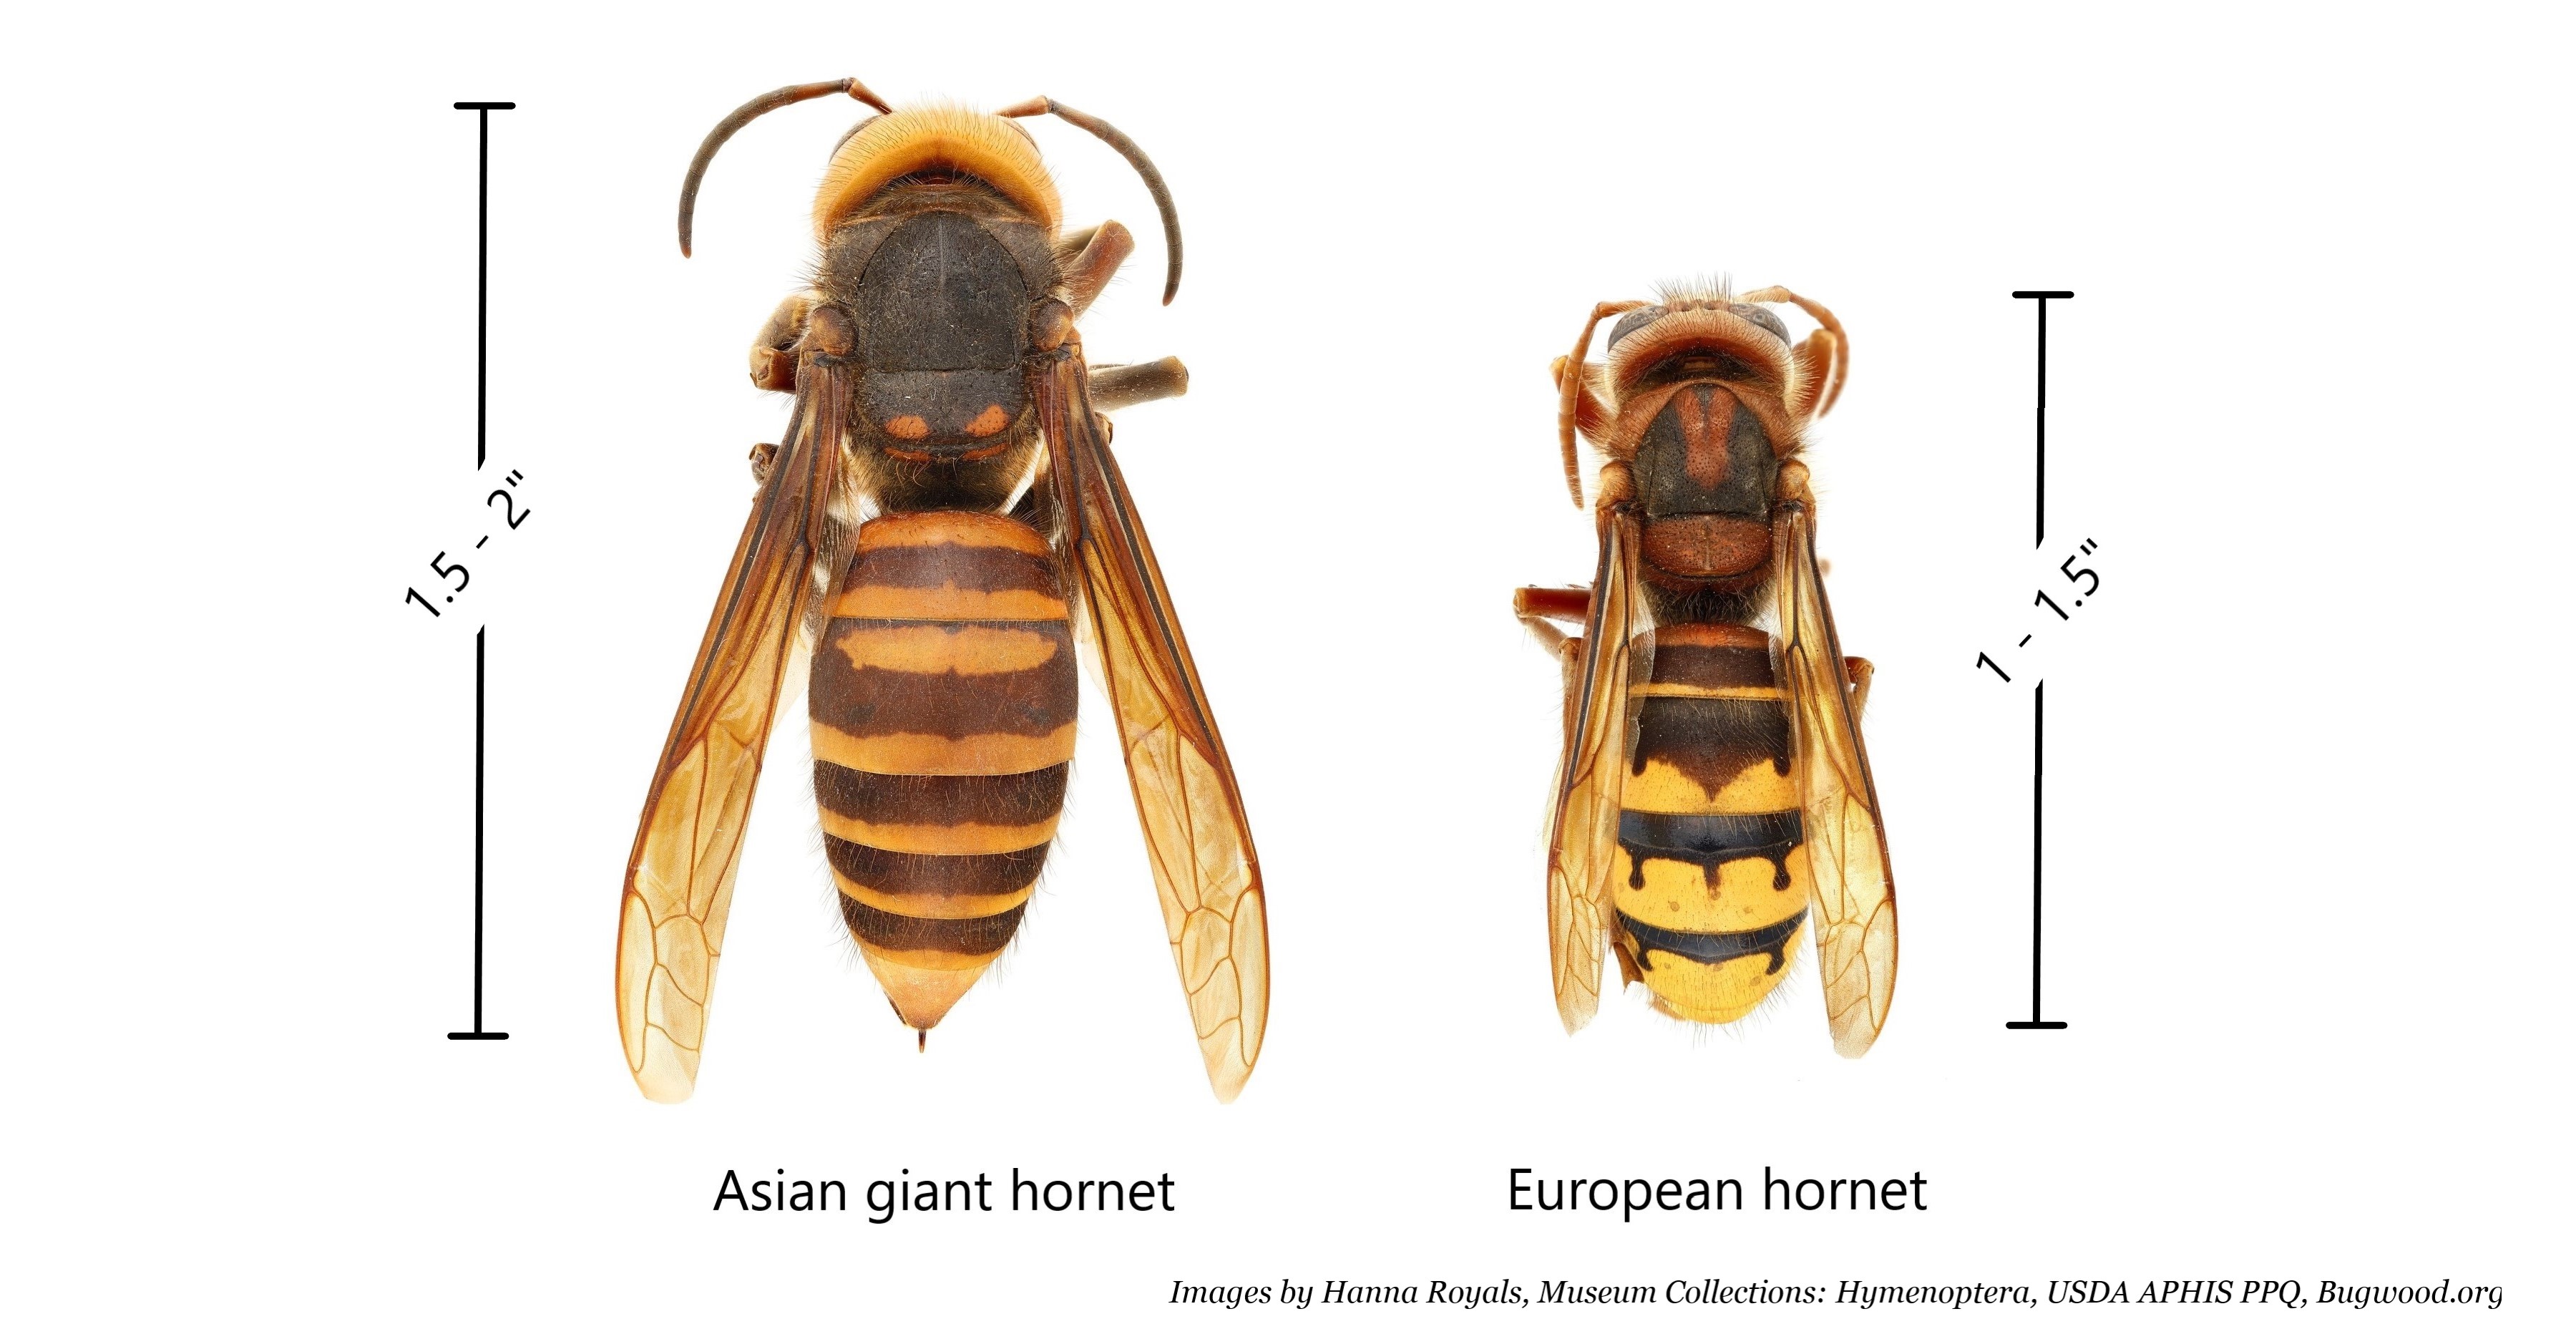 european hornet sting